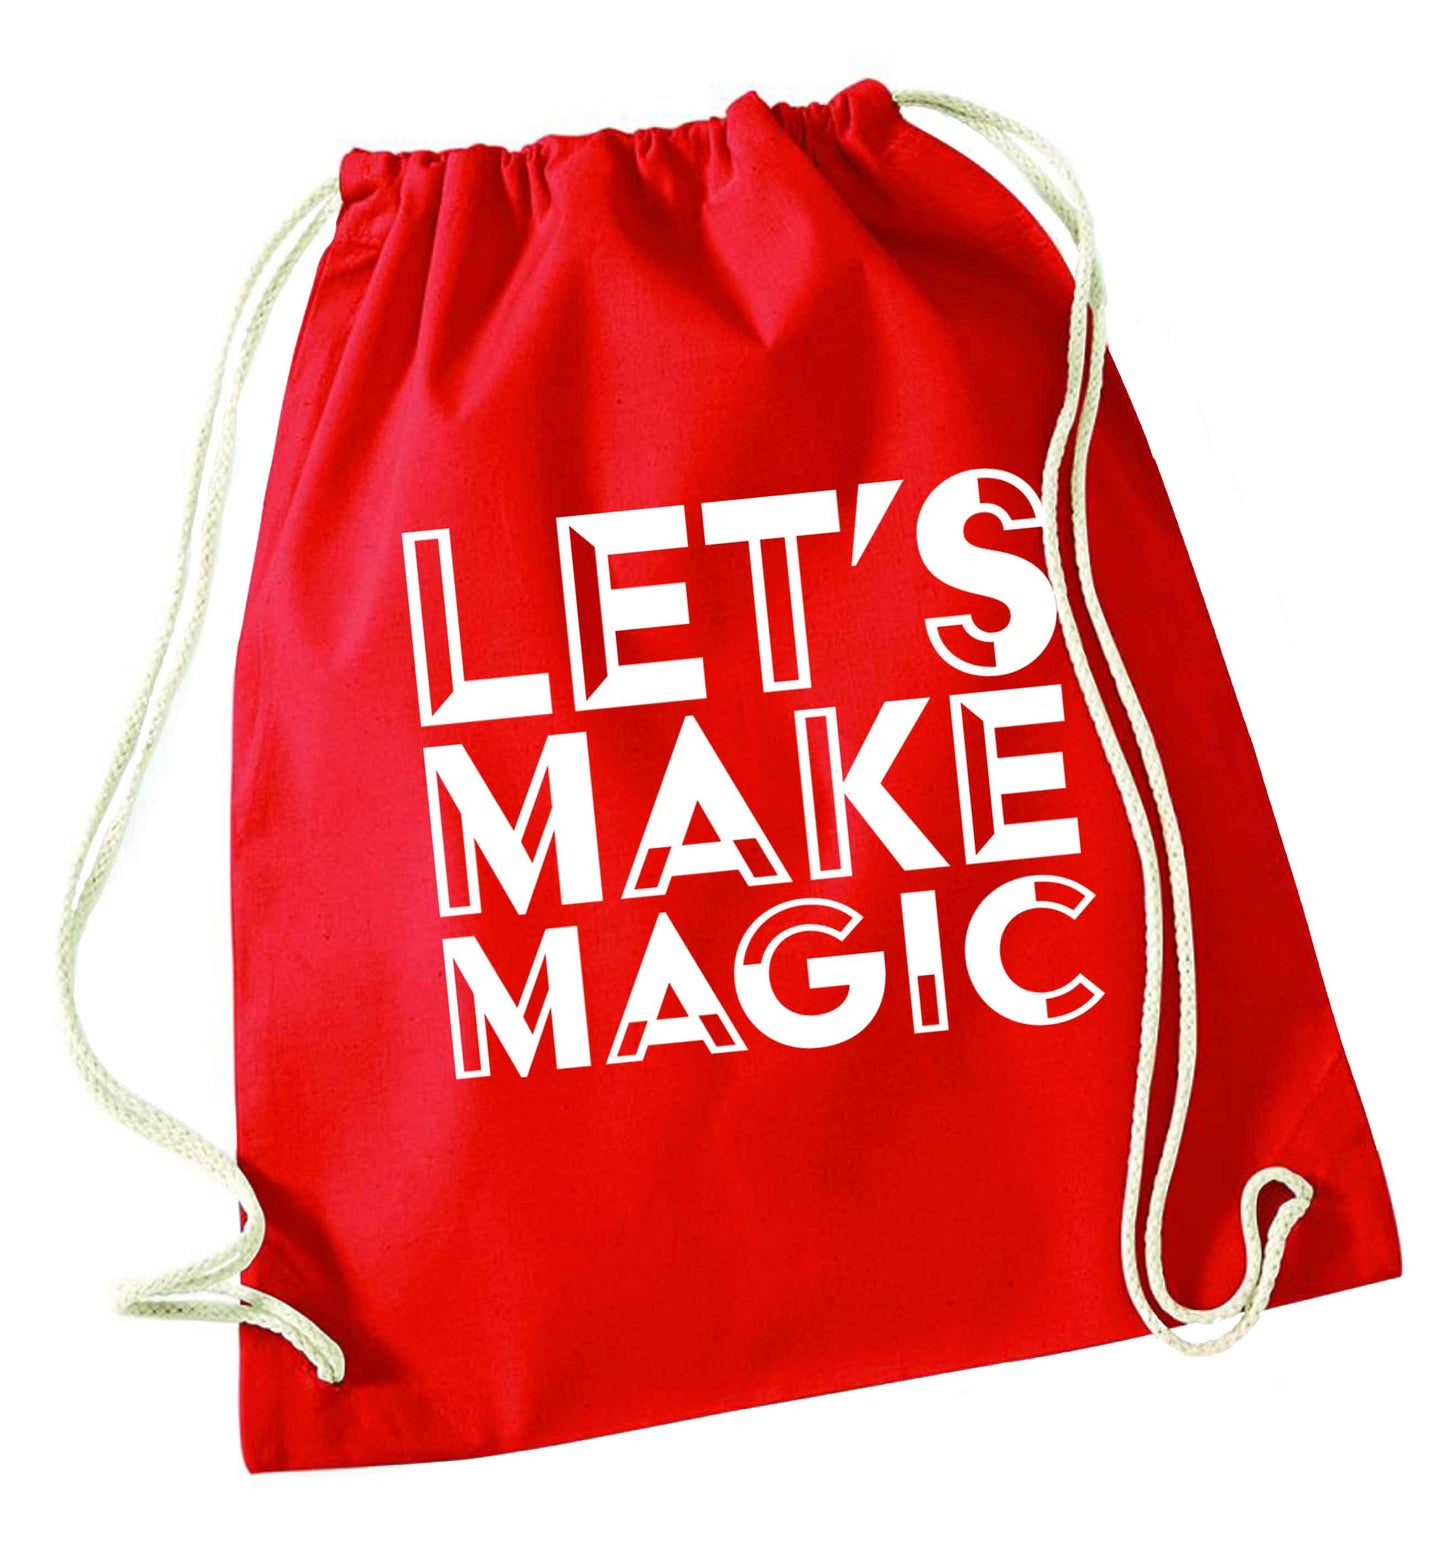 Let's make magic red drawstring bag 